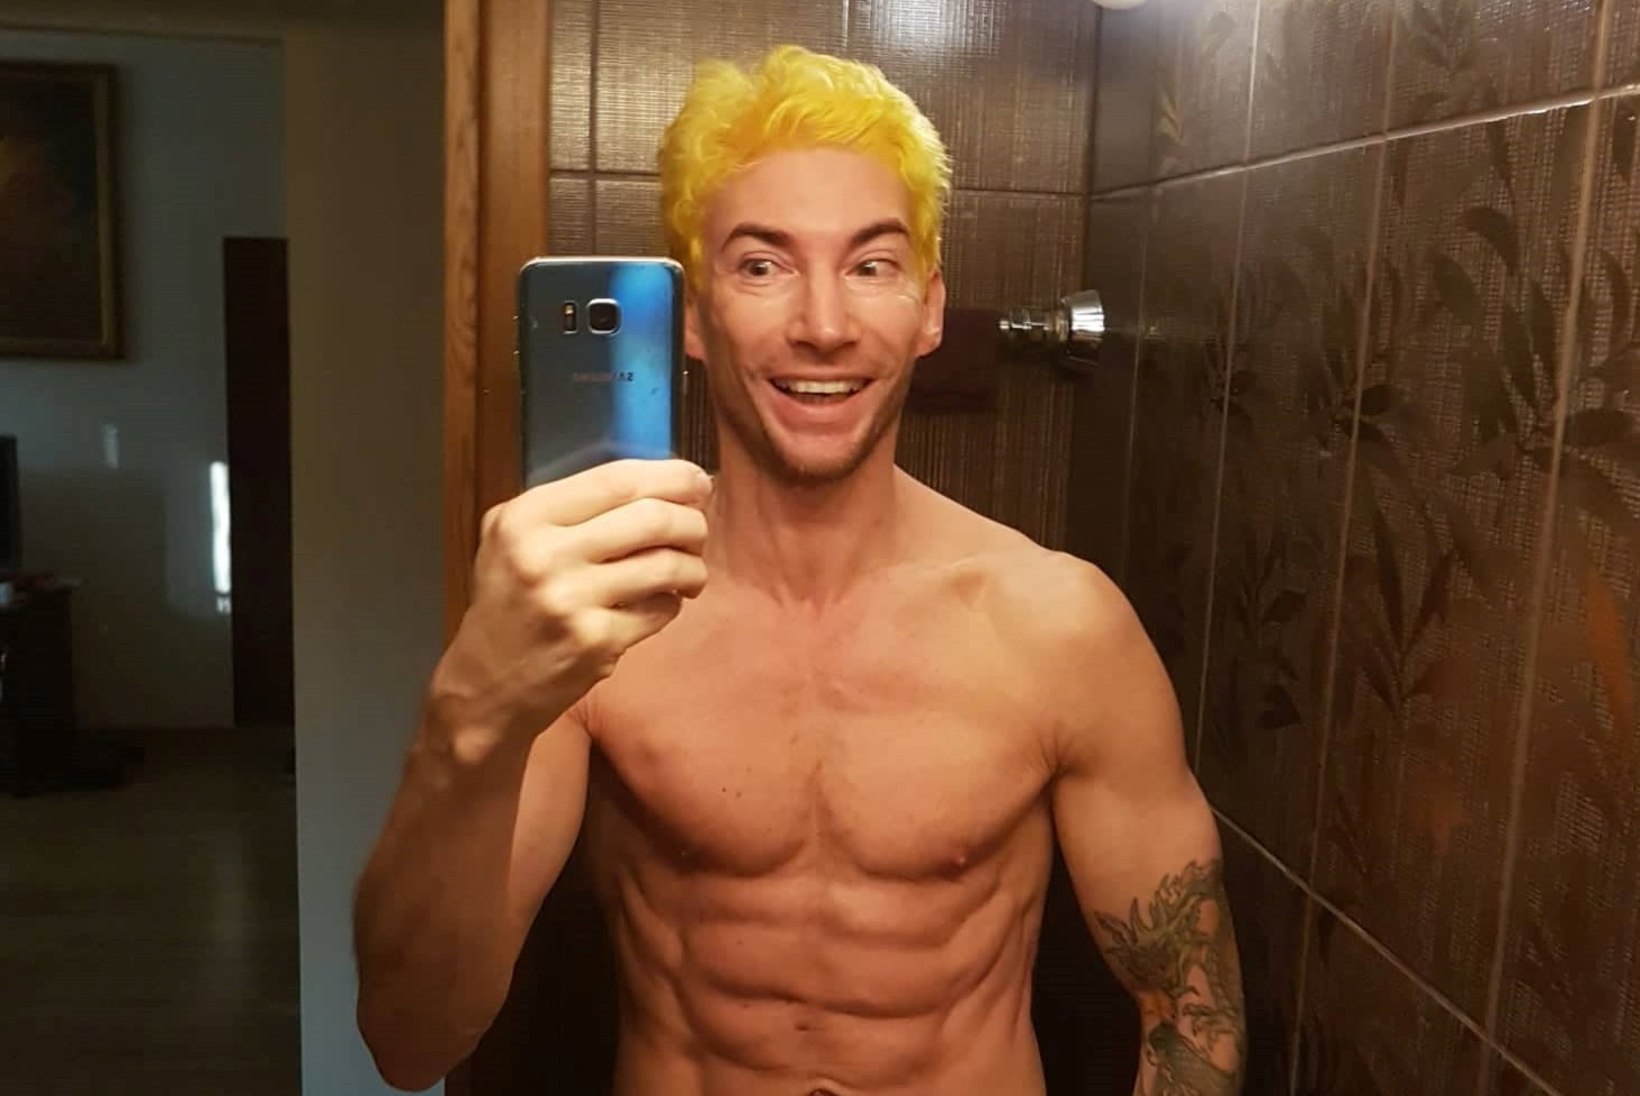 FOTO | Väike päike! Strippar Marco värvis juuksed kollaseks